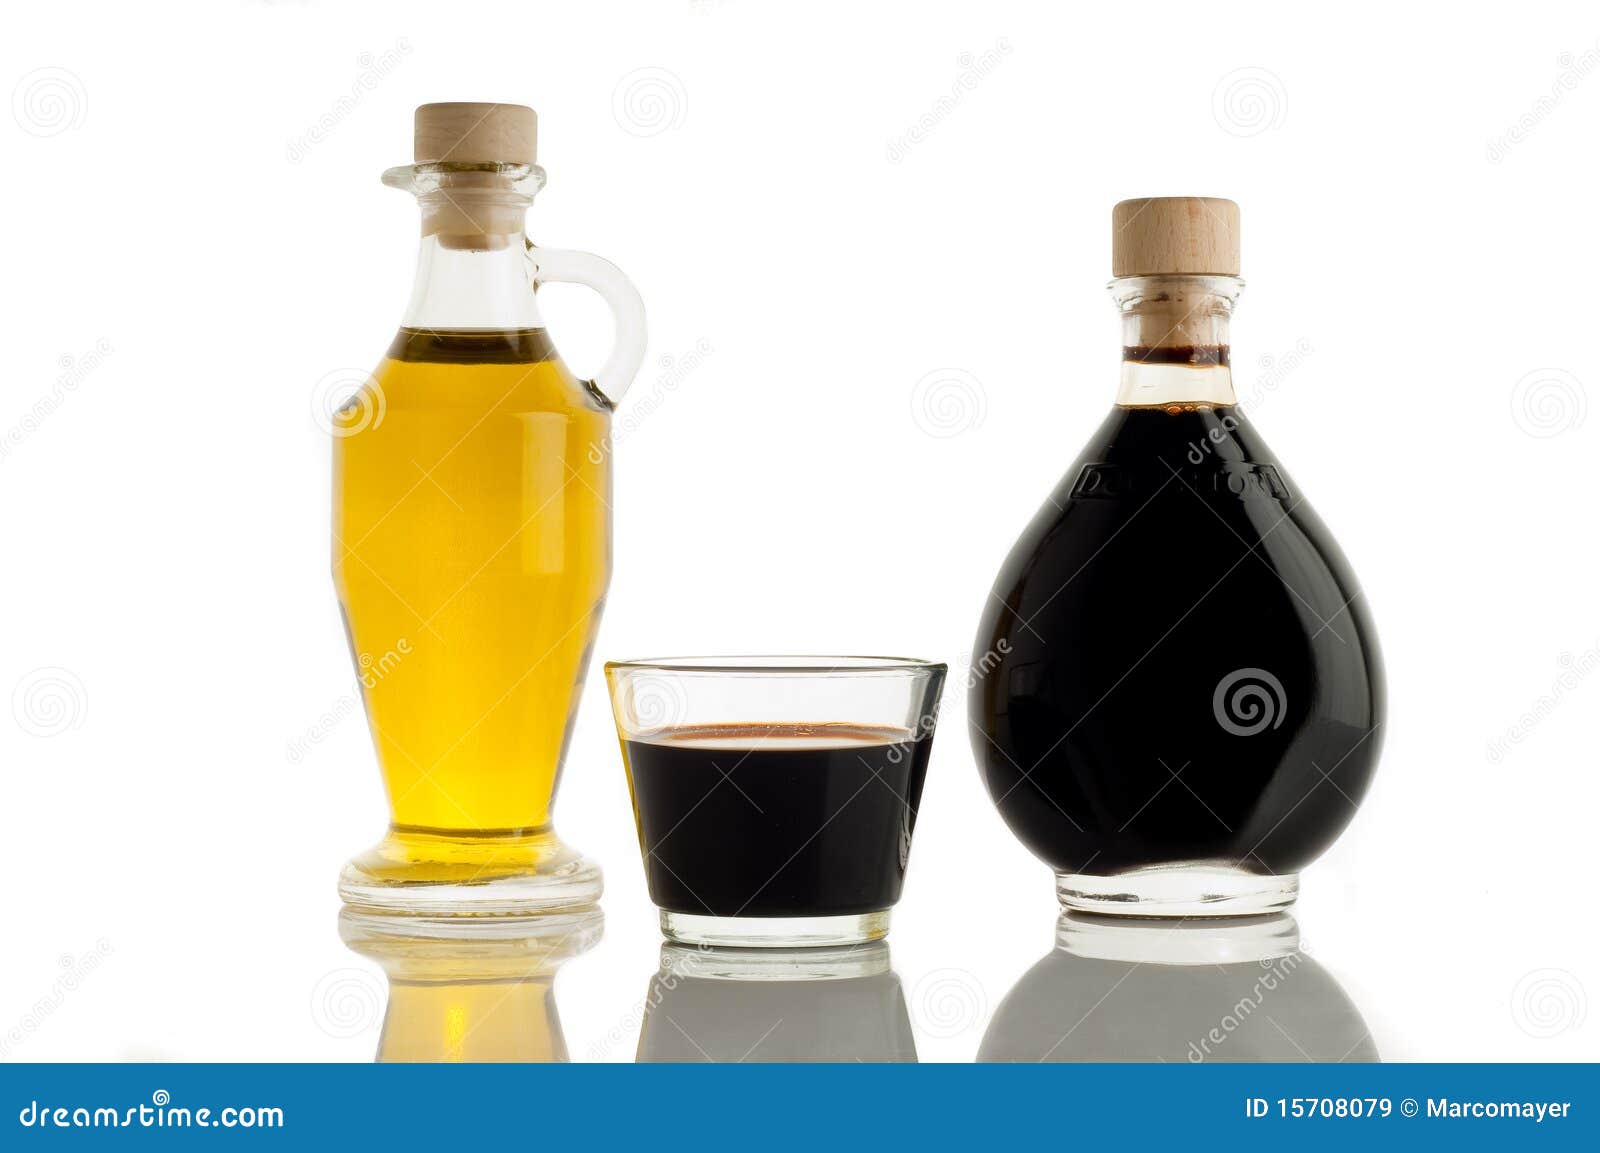 Оливковое масло и бальзамический уксус. Оливковое масло с бальзамическим уксусом. Оливковое масло с бальзамическим уксусом и хлебом.